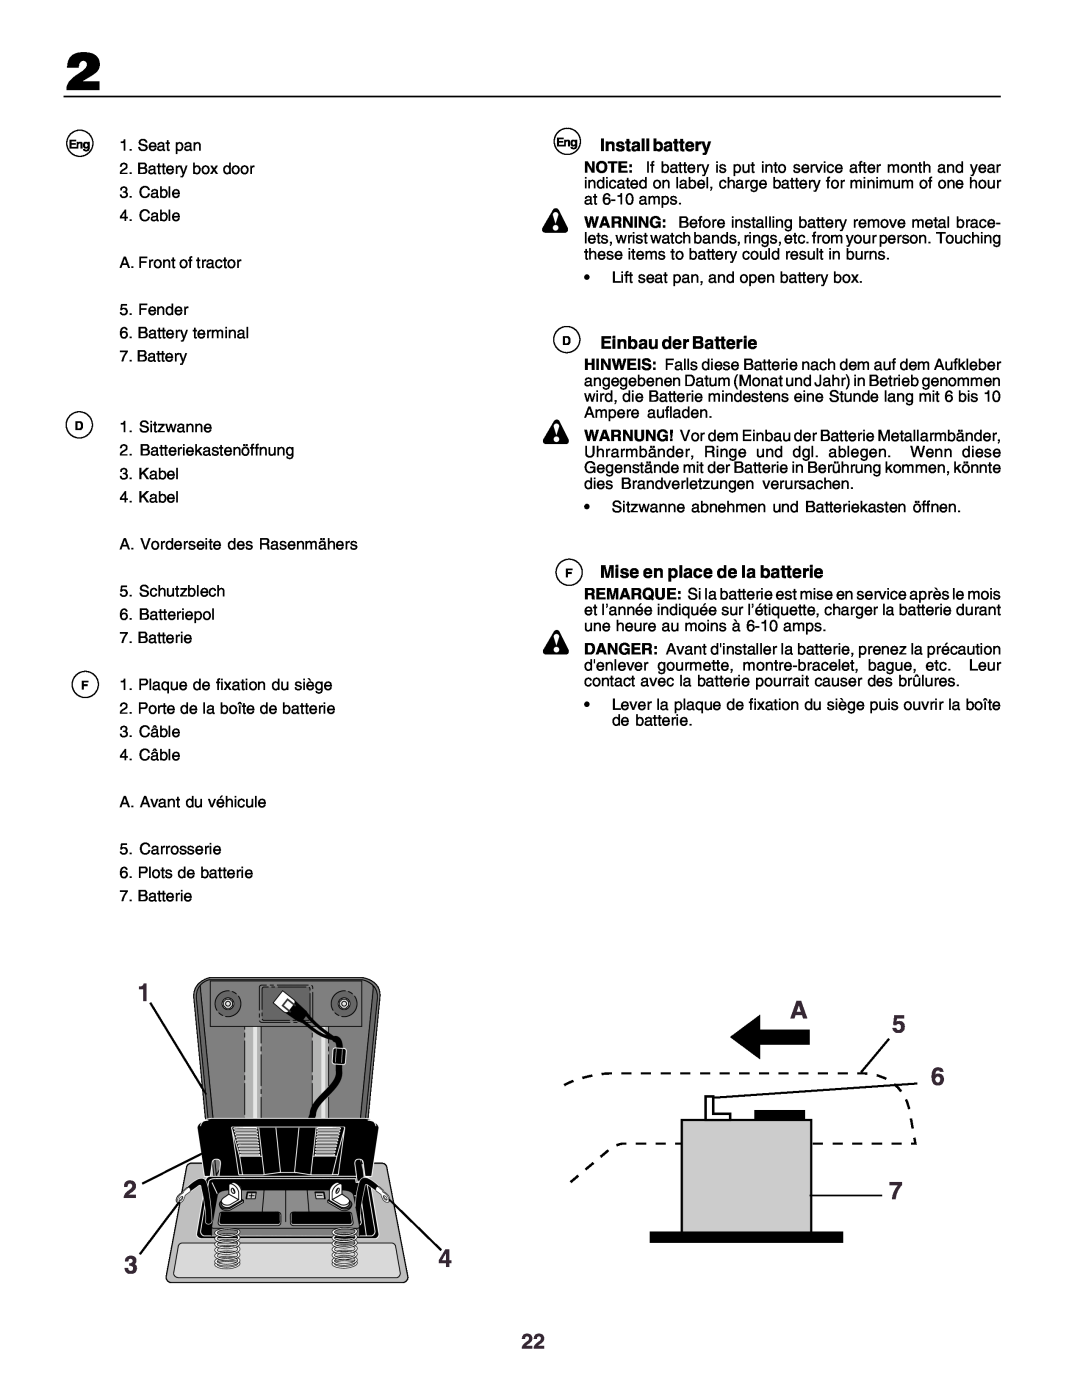 Husqvarna YTH170 instruction manual Eng Install battery, DEinbau der Batterie, FMise en place de la batterie, Seat pan 